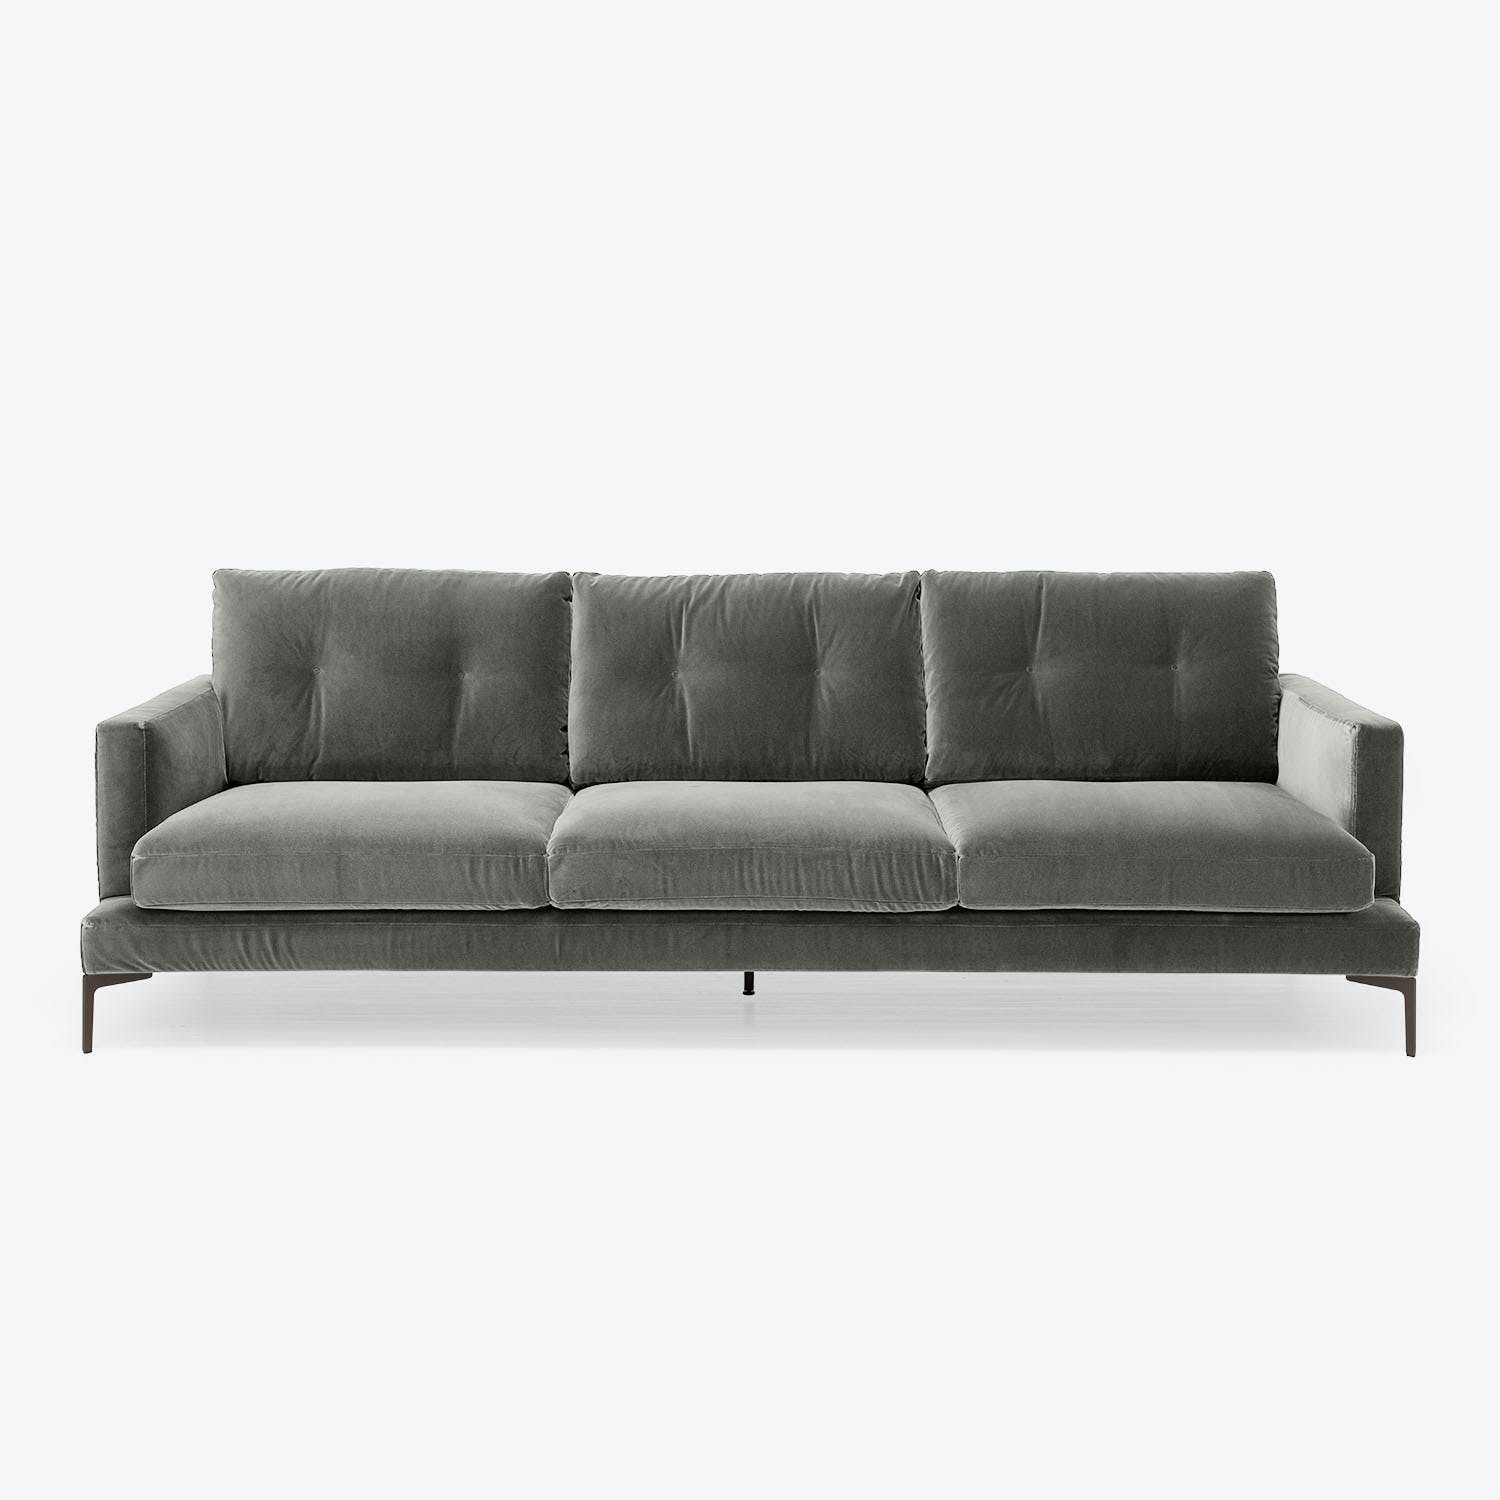 Minimalist modern sofa with plush velvet upholstery in dark tones.